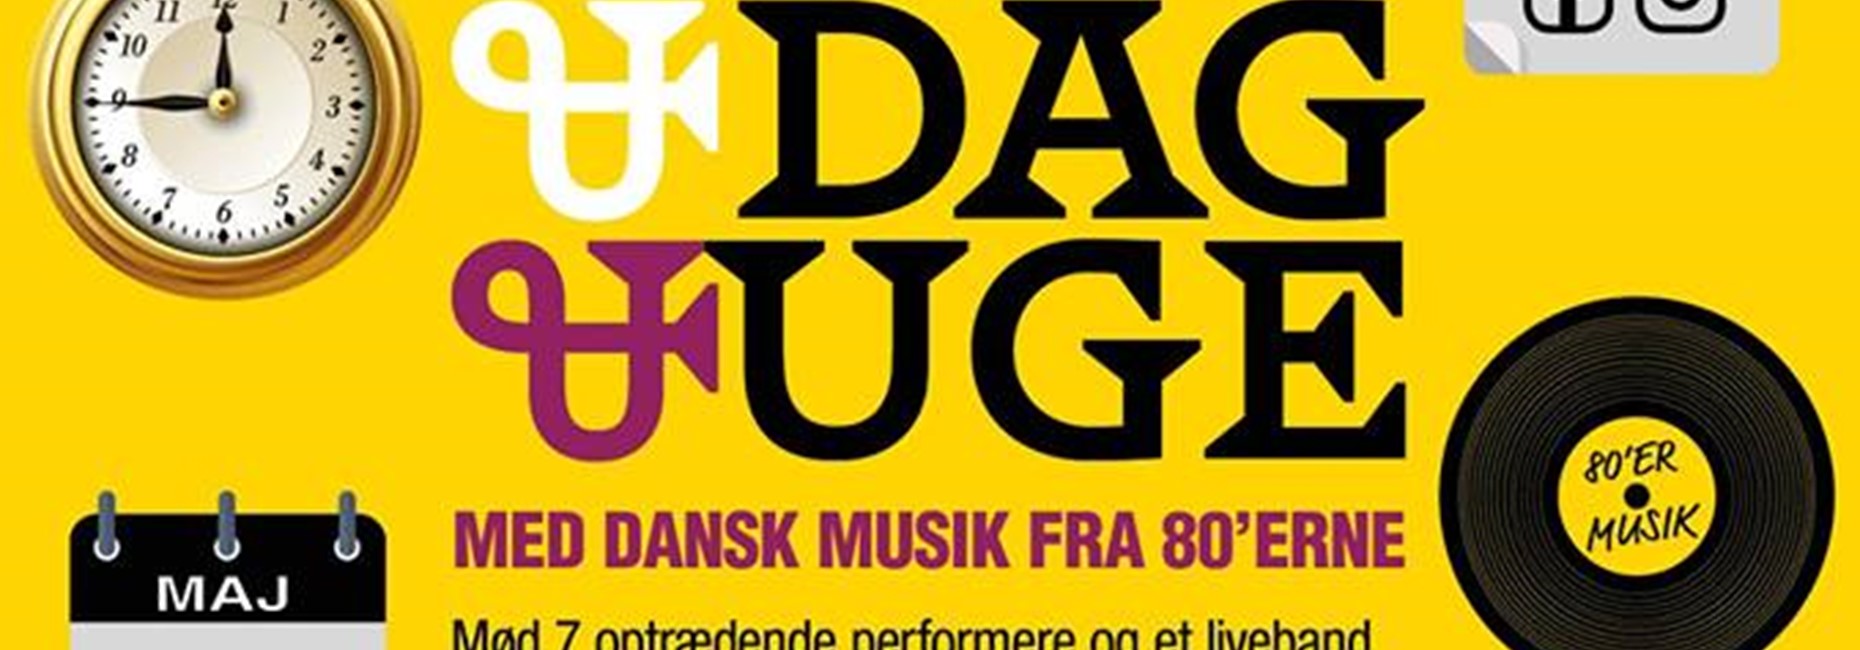 Teater koncerten TIME & DAG & UGE